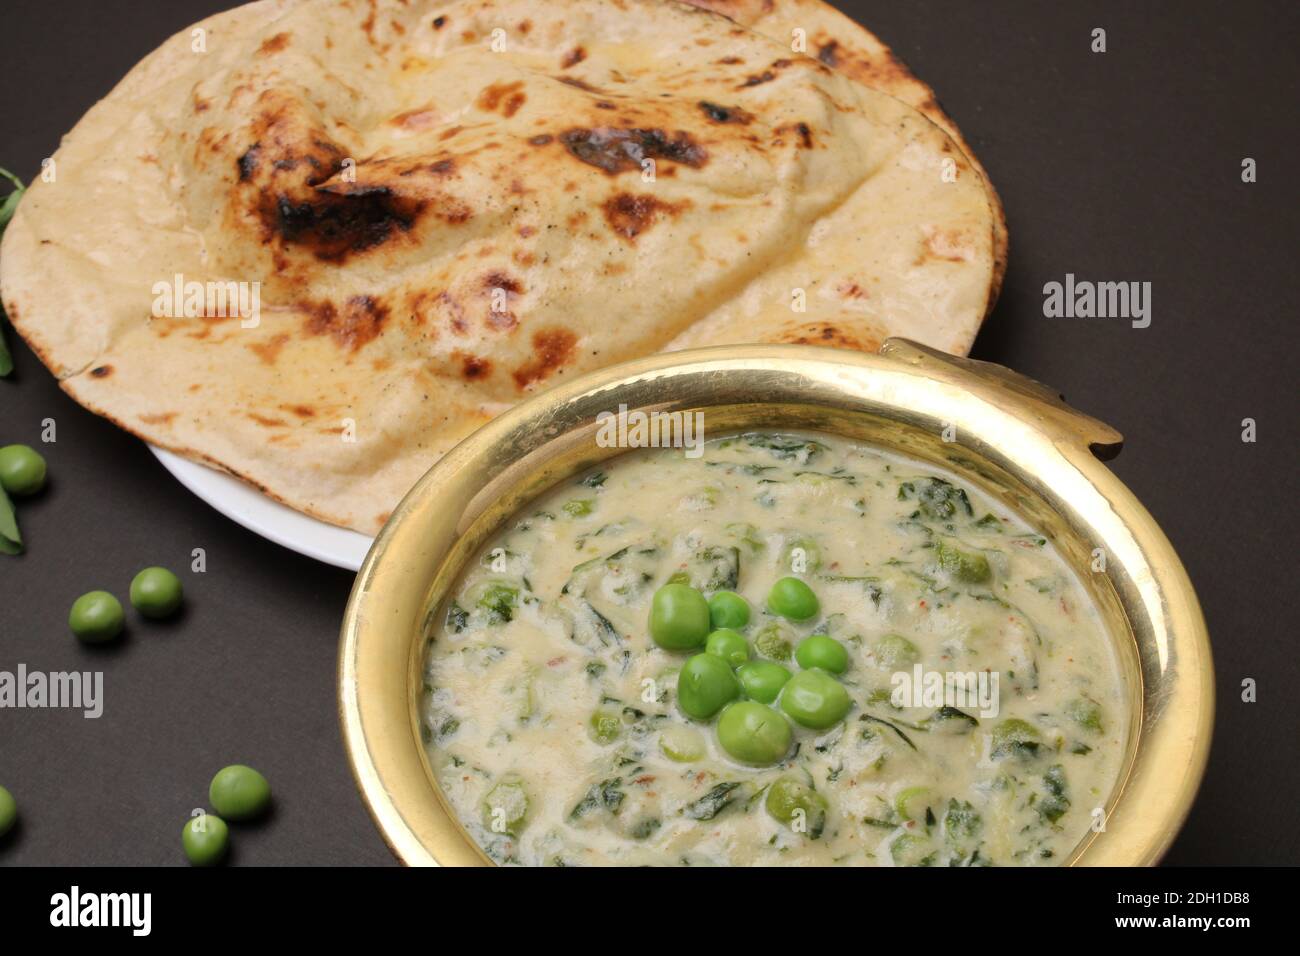 Methi Mutter Malai, Indian food server with naan or tandoori roti. Stock Photo